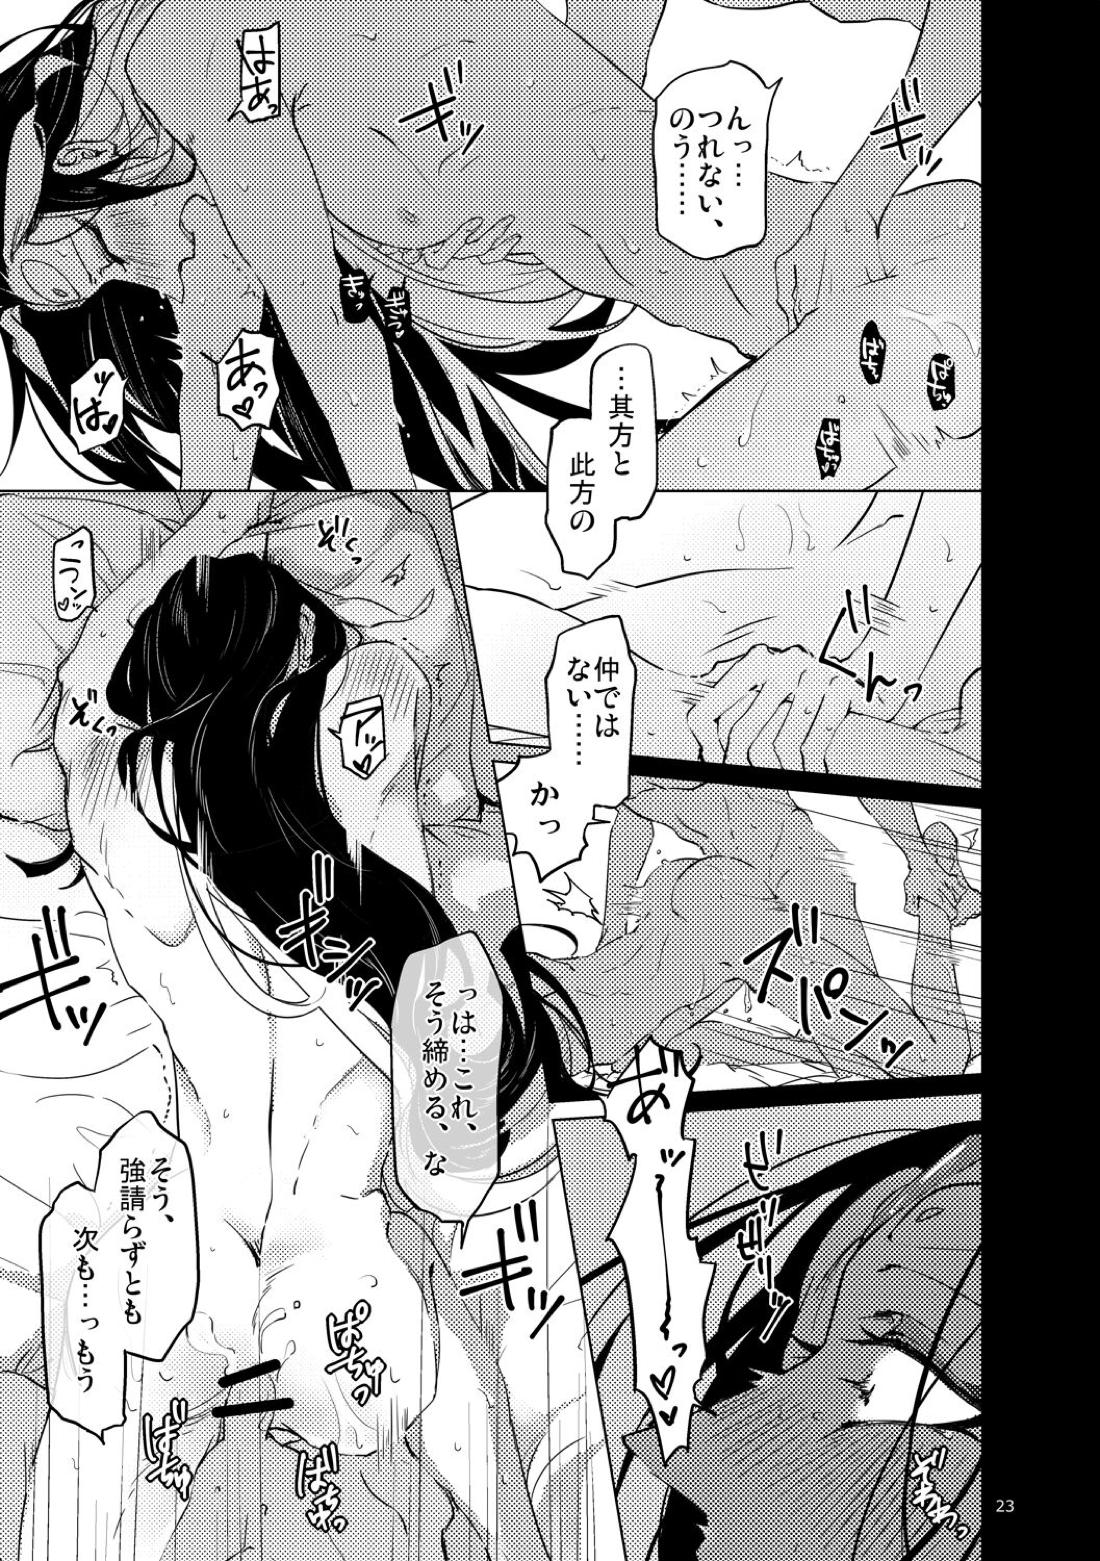 【BL漫画 Fate/Grand Order】男性体と無性体の始皇帝が同期するために媚薬を口にしながら肌を重ねるイチャイチャボーイズラブエッチ24